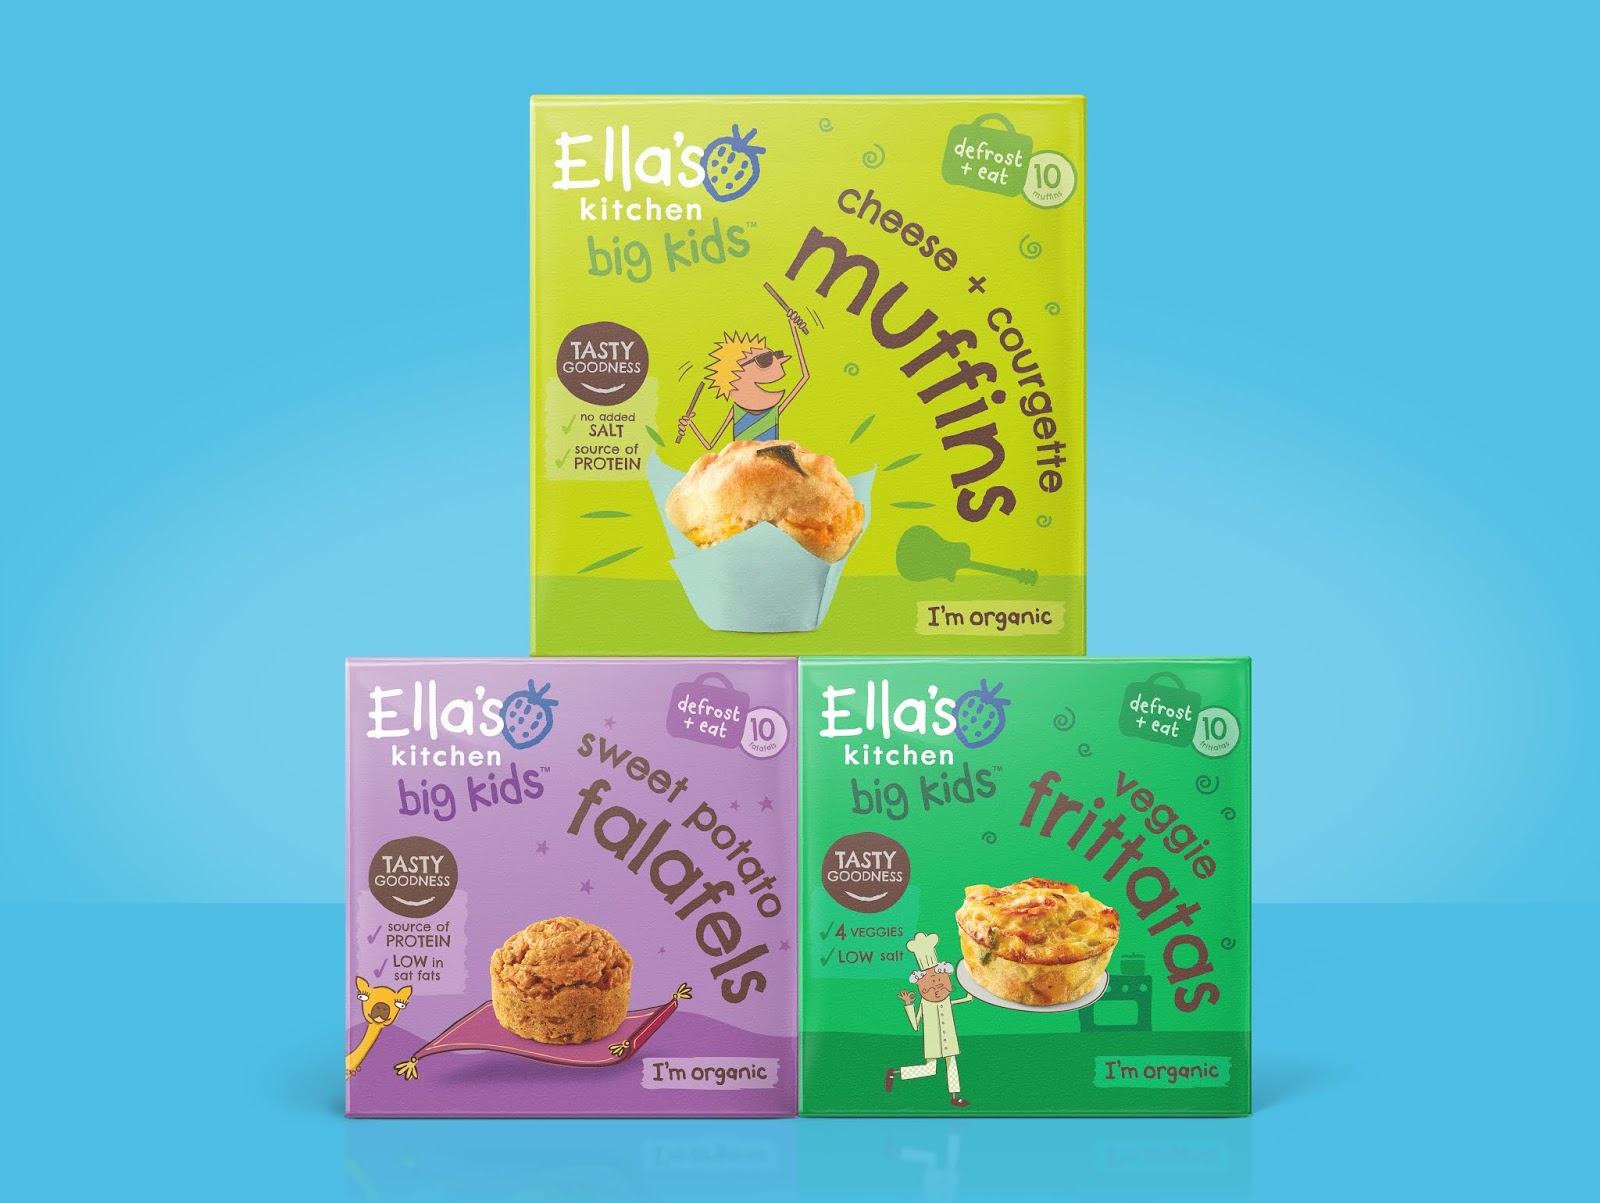 婴儿食品包装设计西安oe欧亿体育app官方下载
品牌包装设计